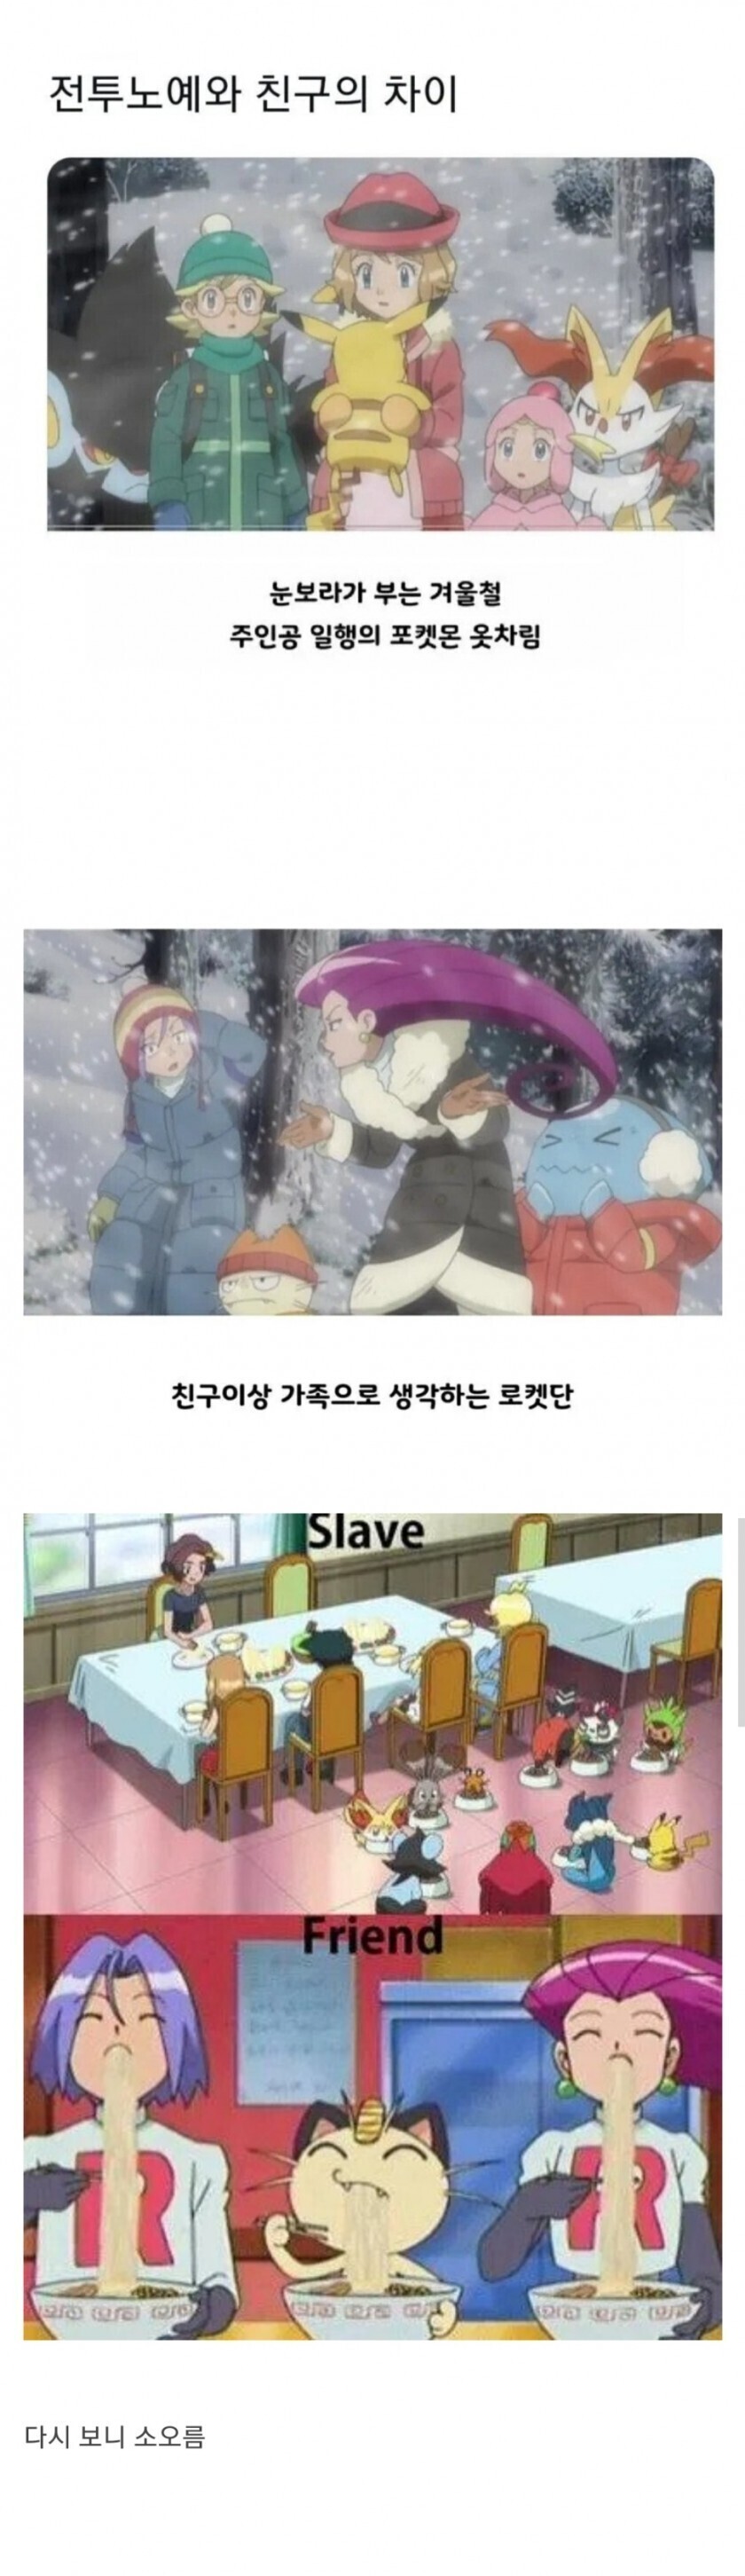 친구와 노예의 차이